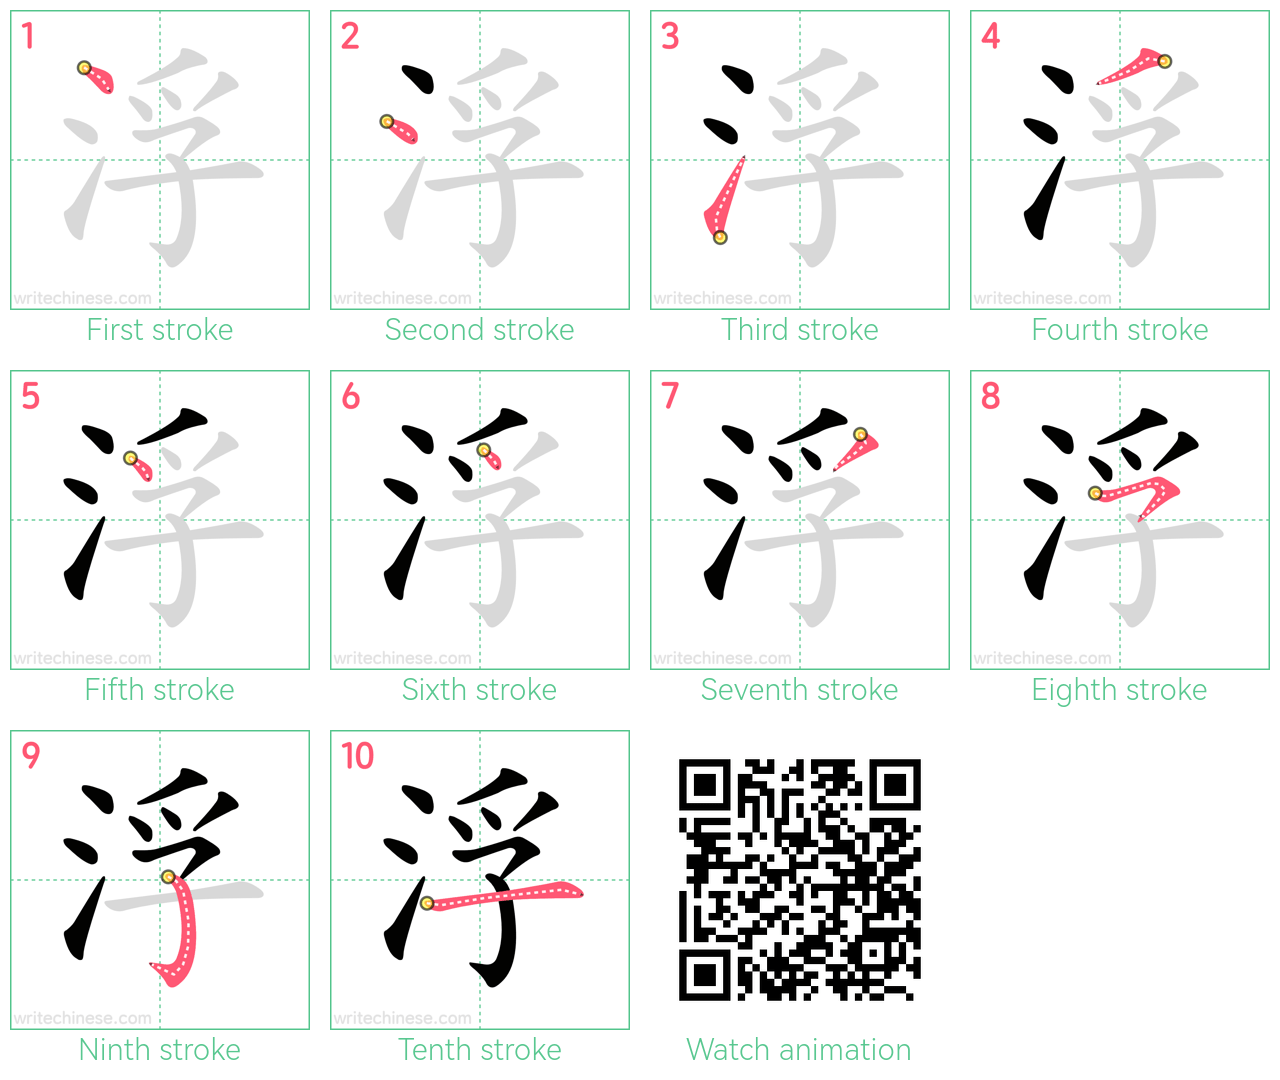 浮 step-by-step stroke order diagrams